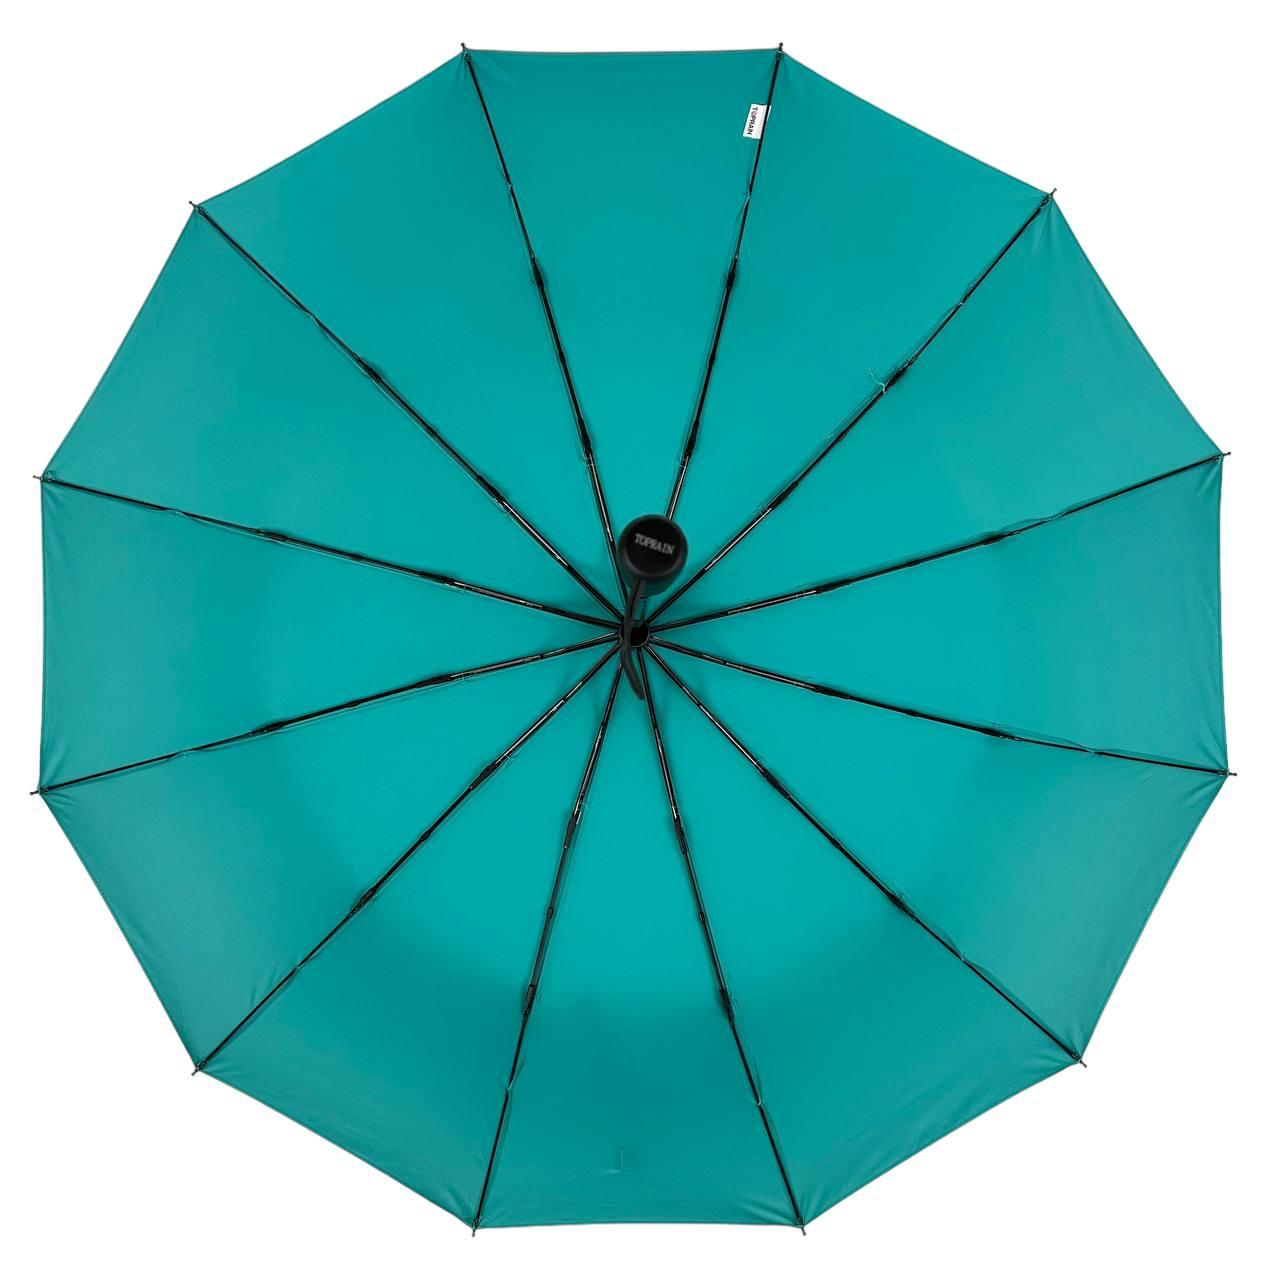 Складана парасолька повний автомат Toprain 105 см бірюзова - фото 4